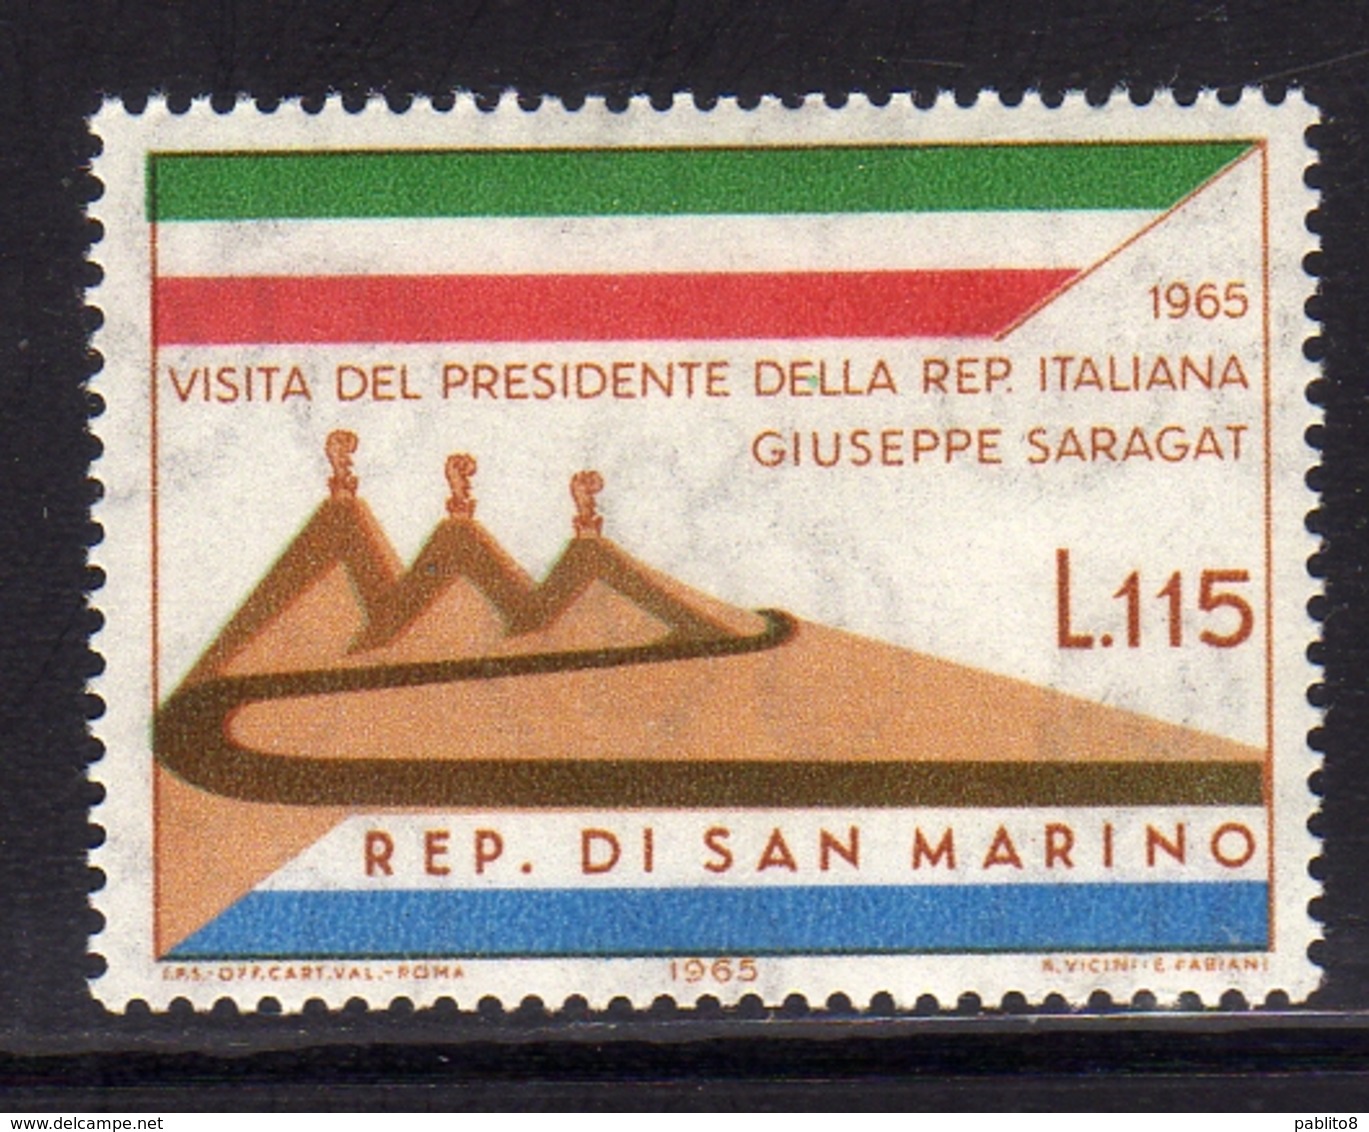 REPUBBLICA DI SAN MARINO 1965 VISITA DEL PRESIDENTE DELLA REPUBBLICA ITALIANA SARAGAT LIRE 115 MNH - Neufs